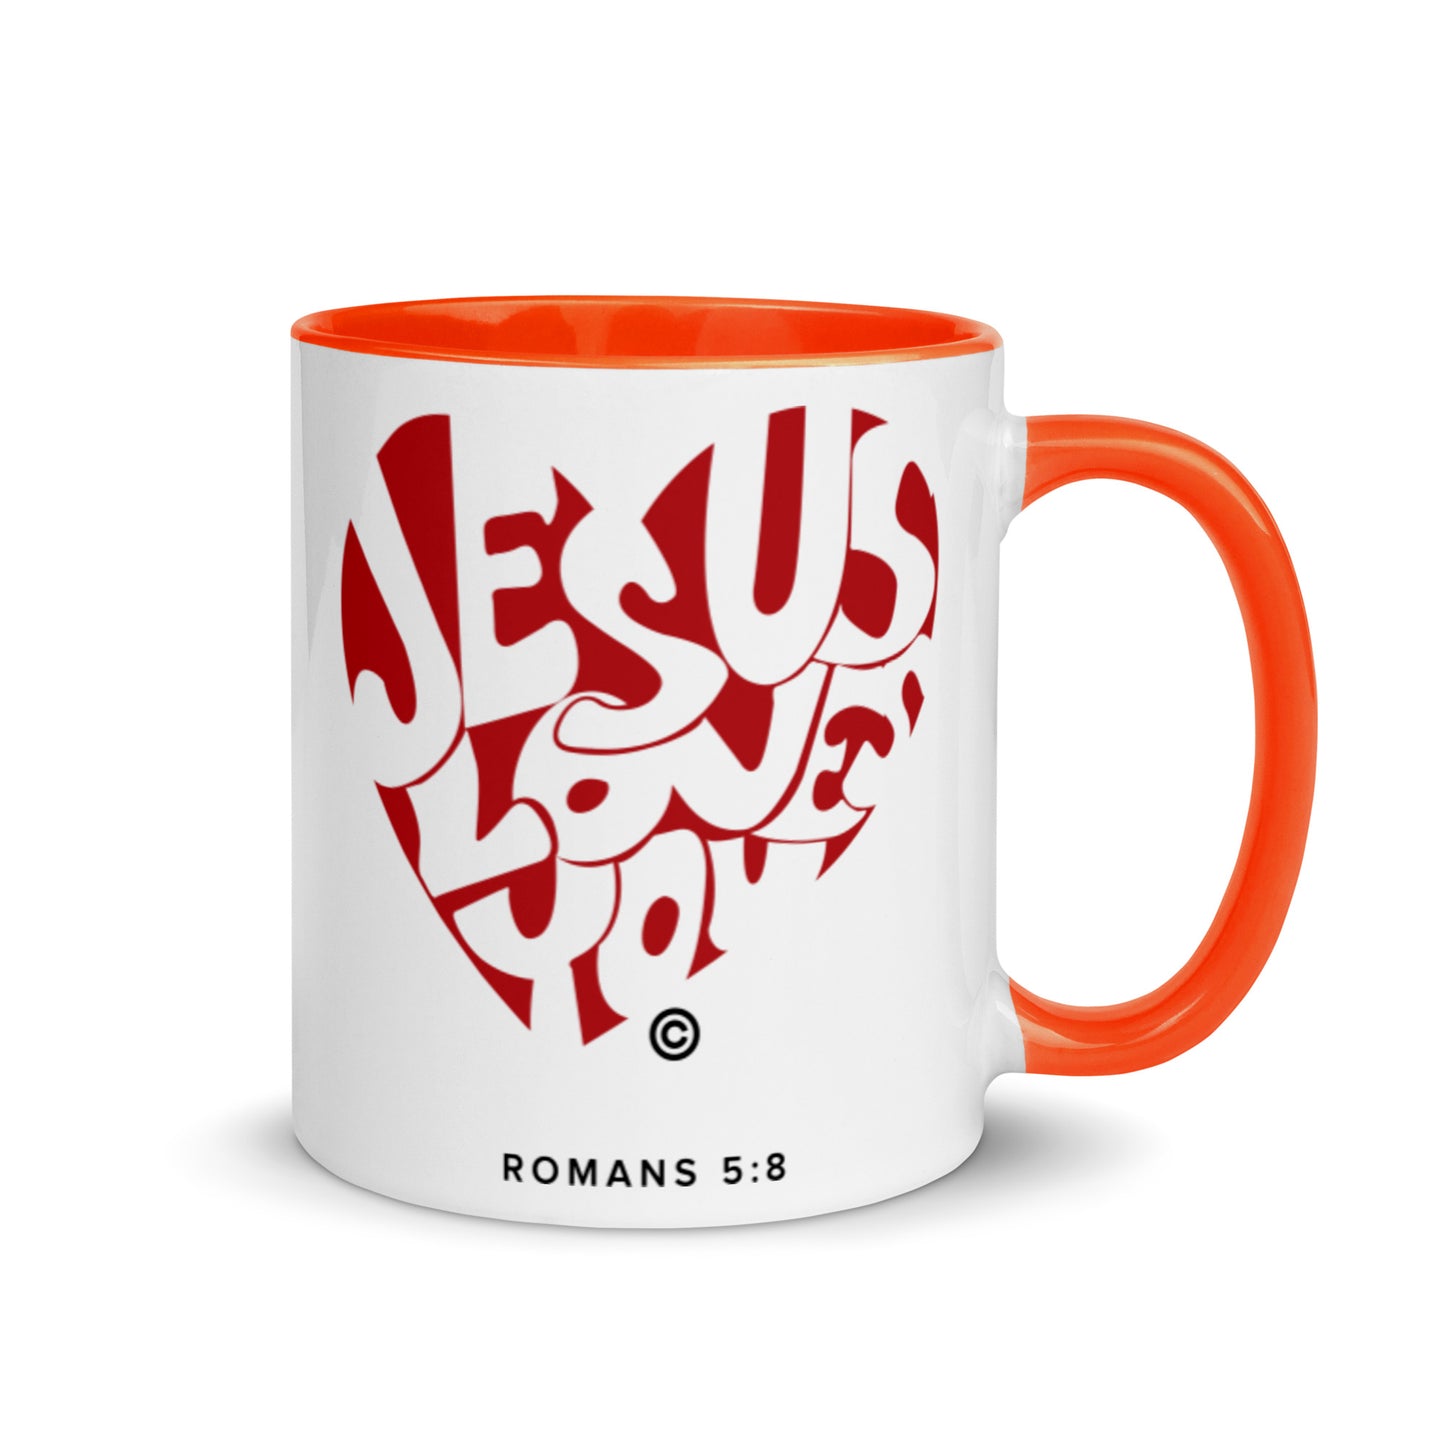 Jesus Loves You Mug with Color Inside